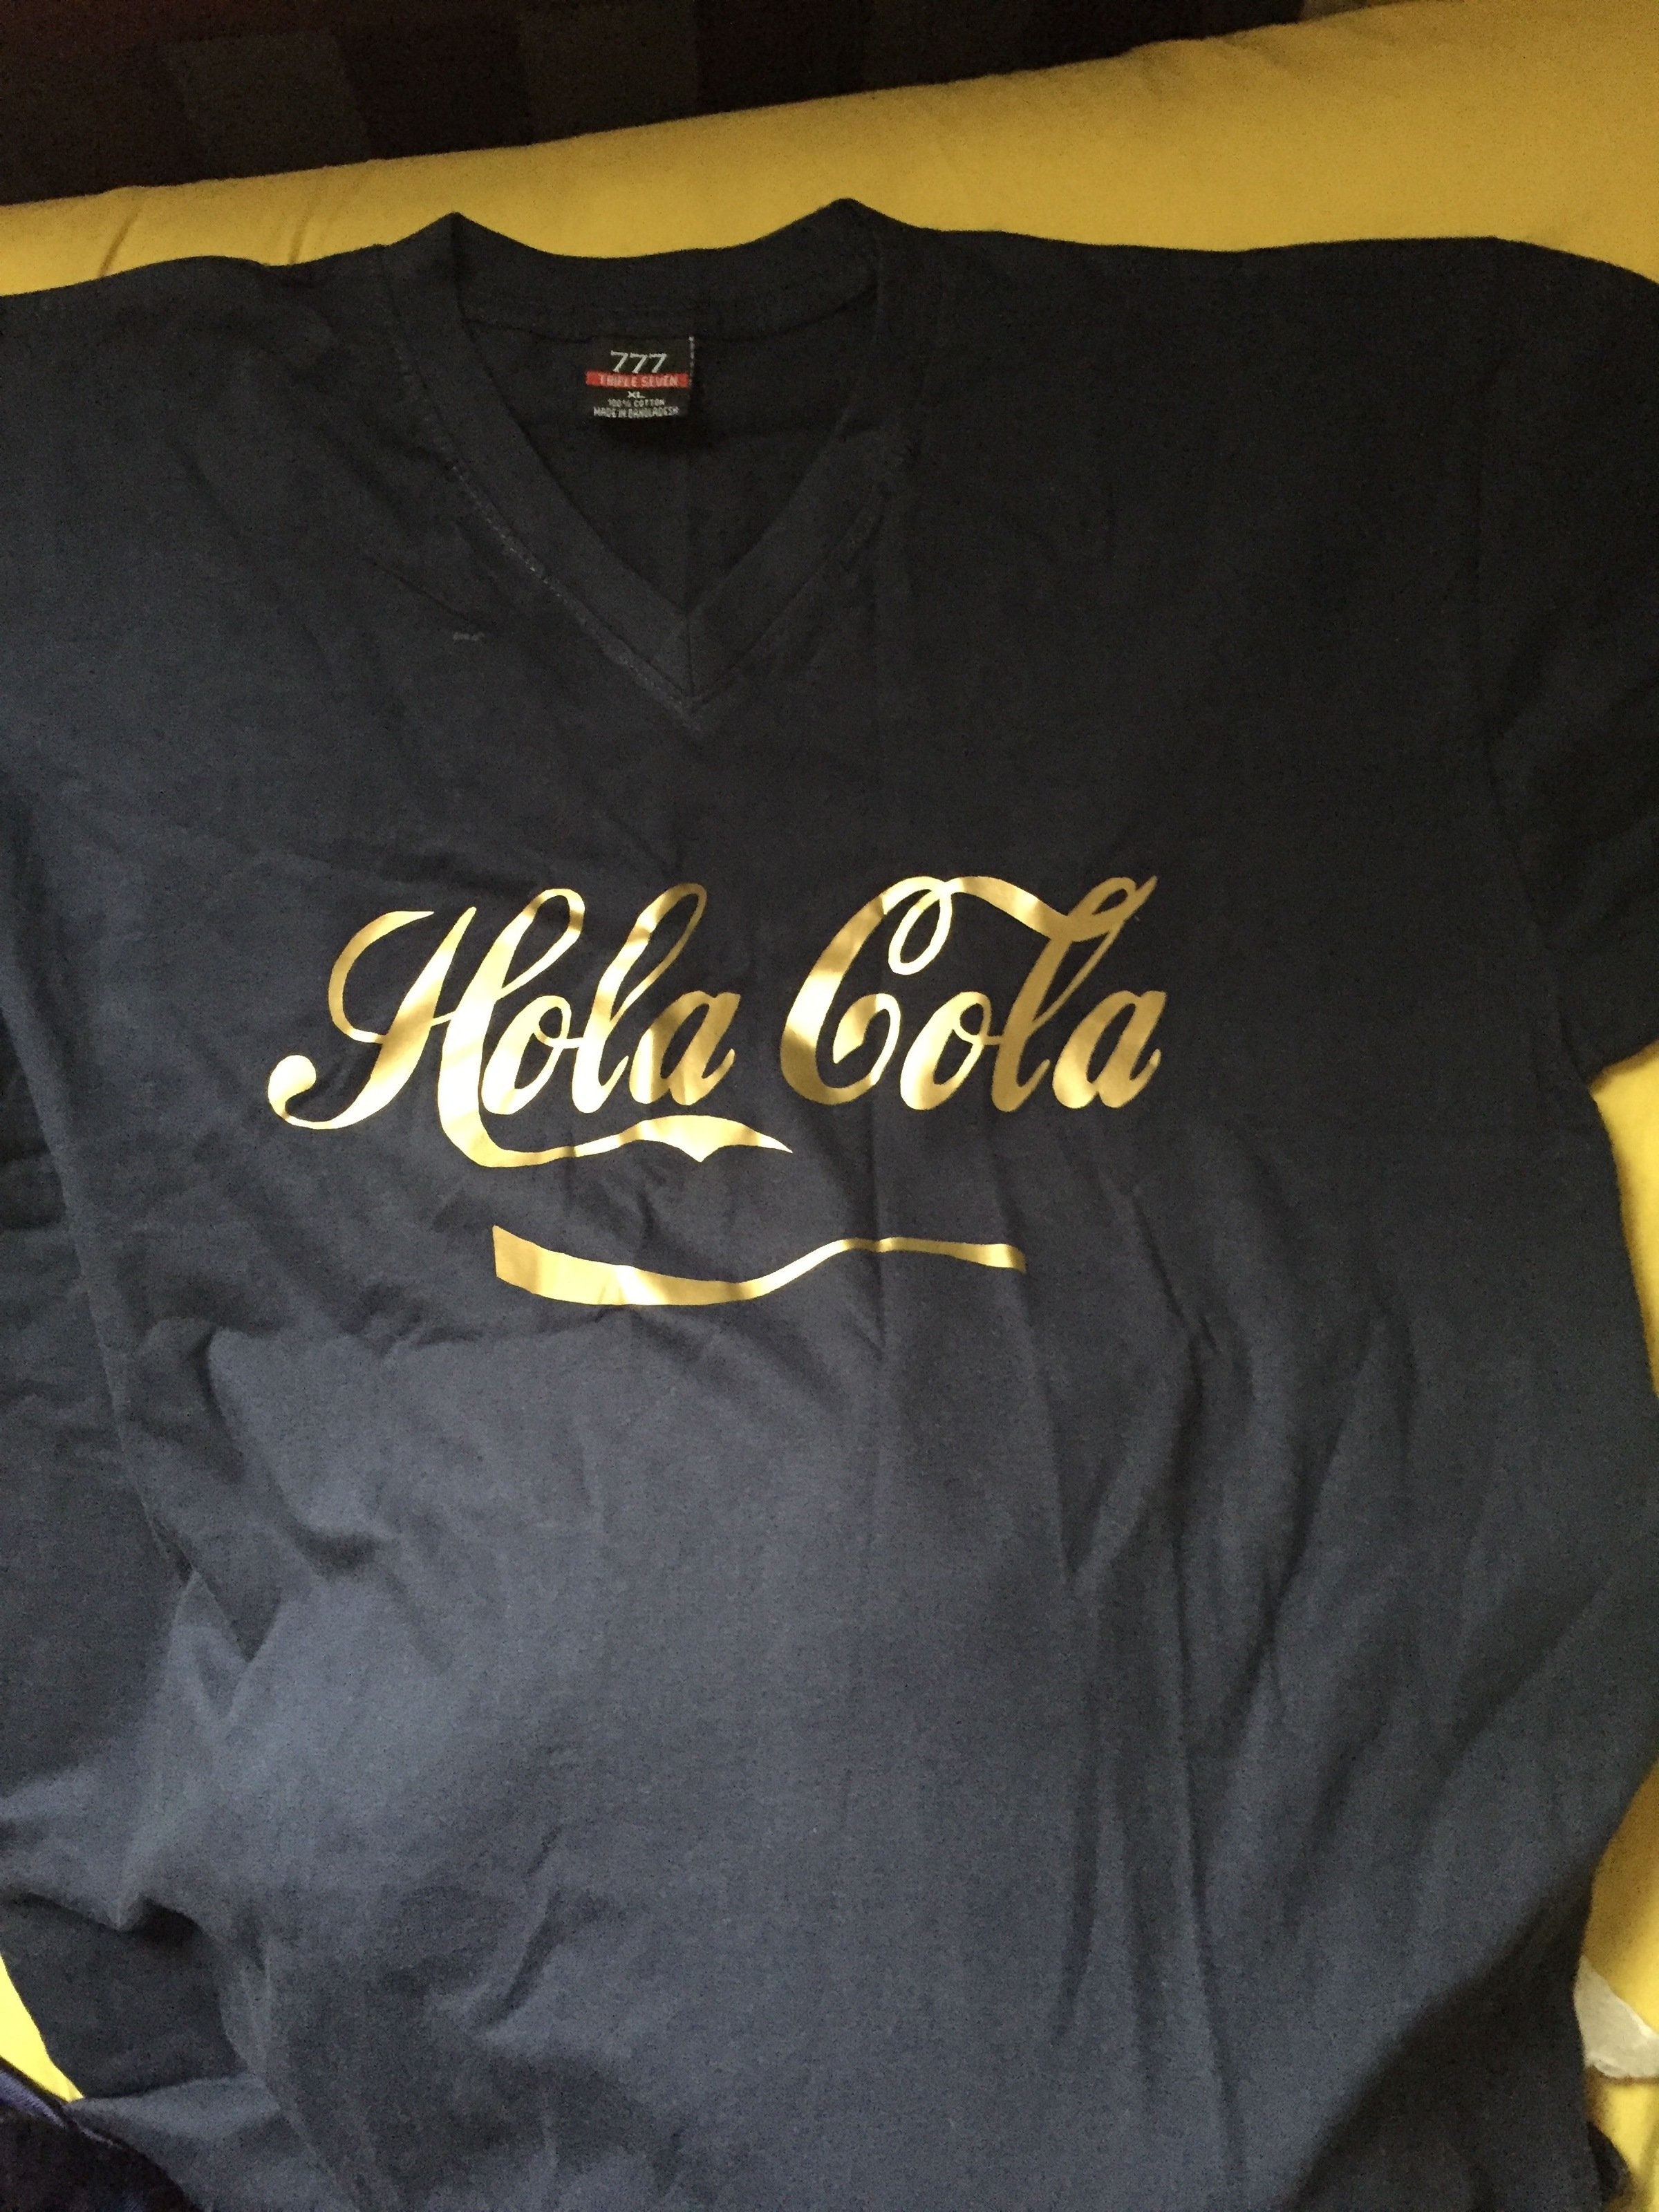 Hola Cola - song and lyrics by DaGoldenChild